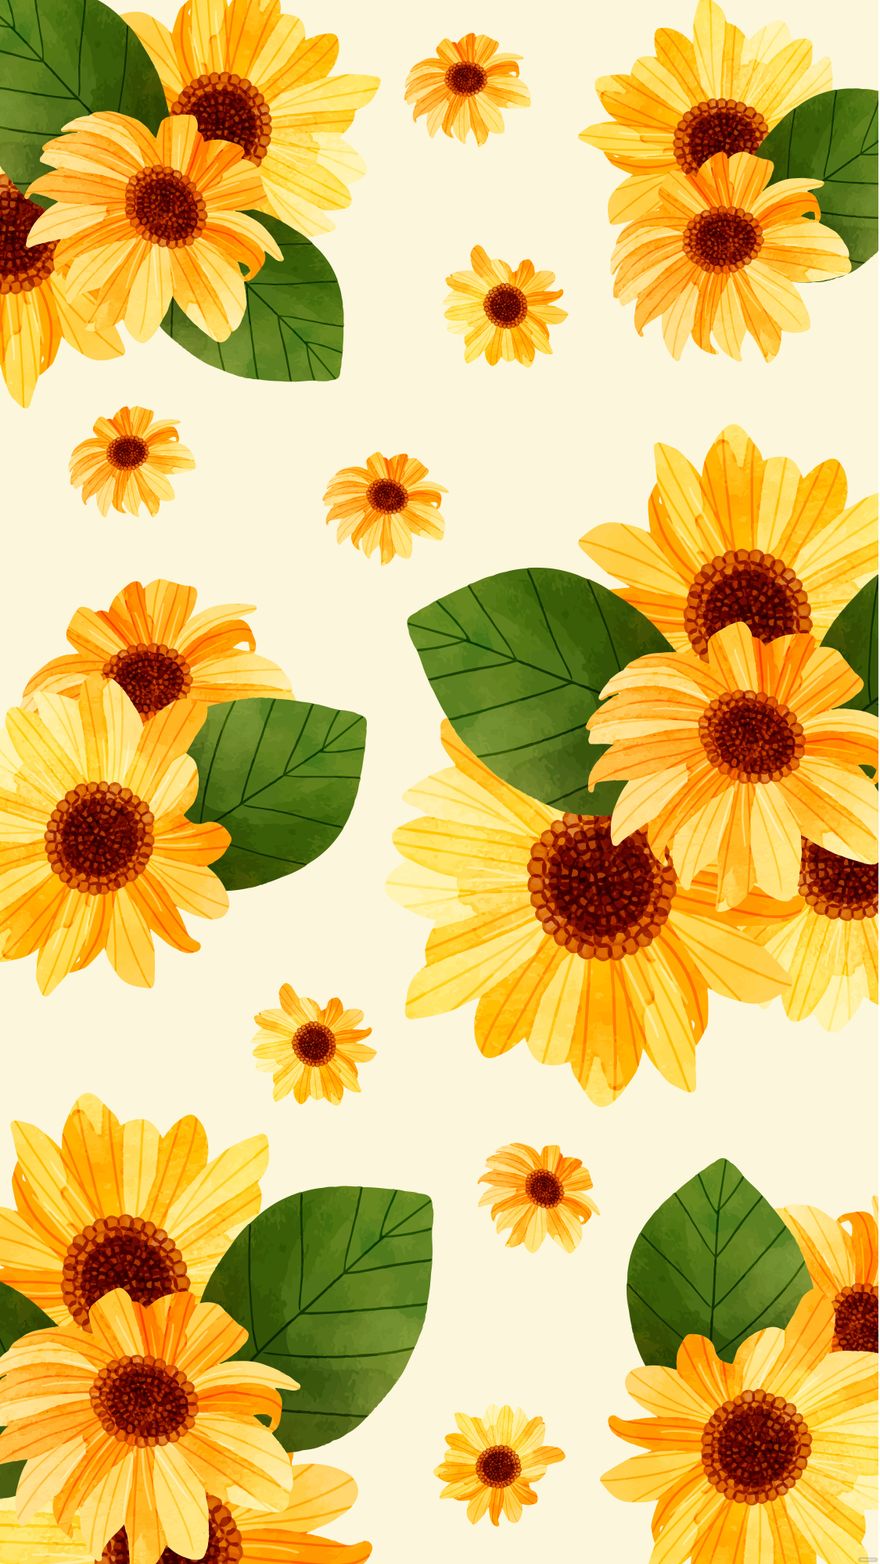 Free Aesthetic Sunflower Iphone Background - EPS, Illustrator, JPG ...